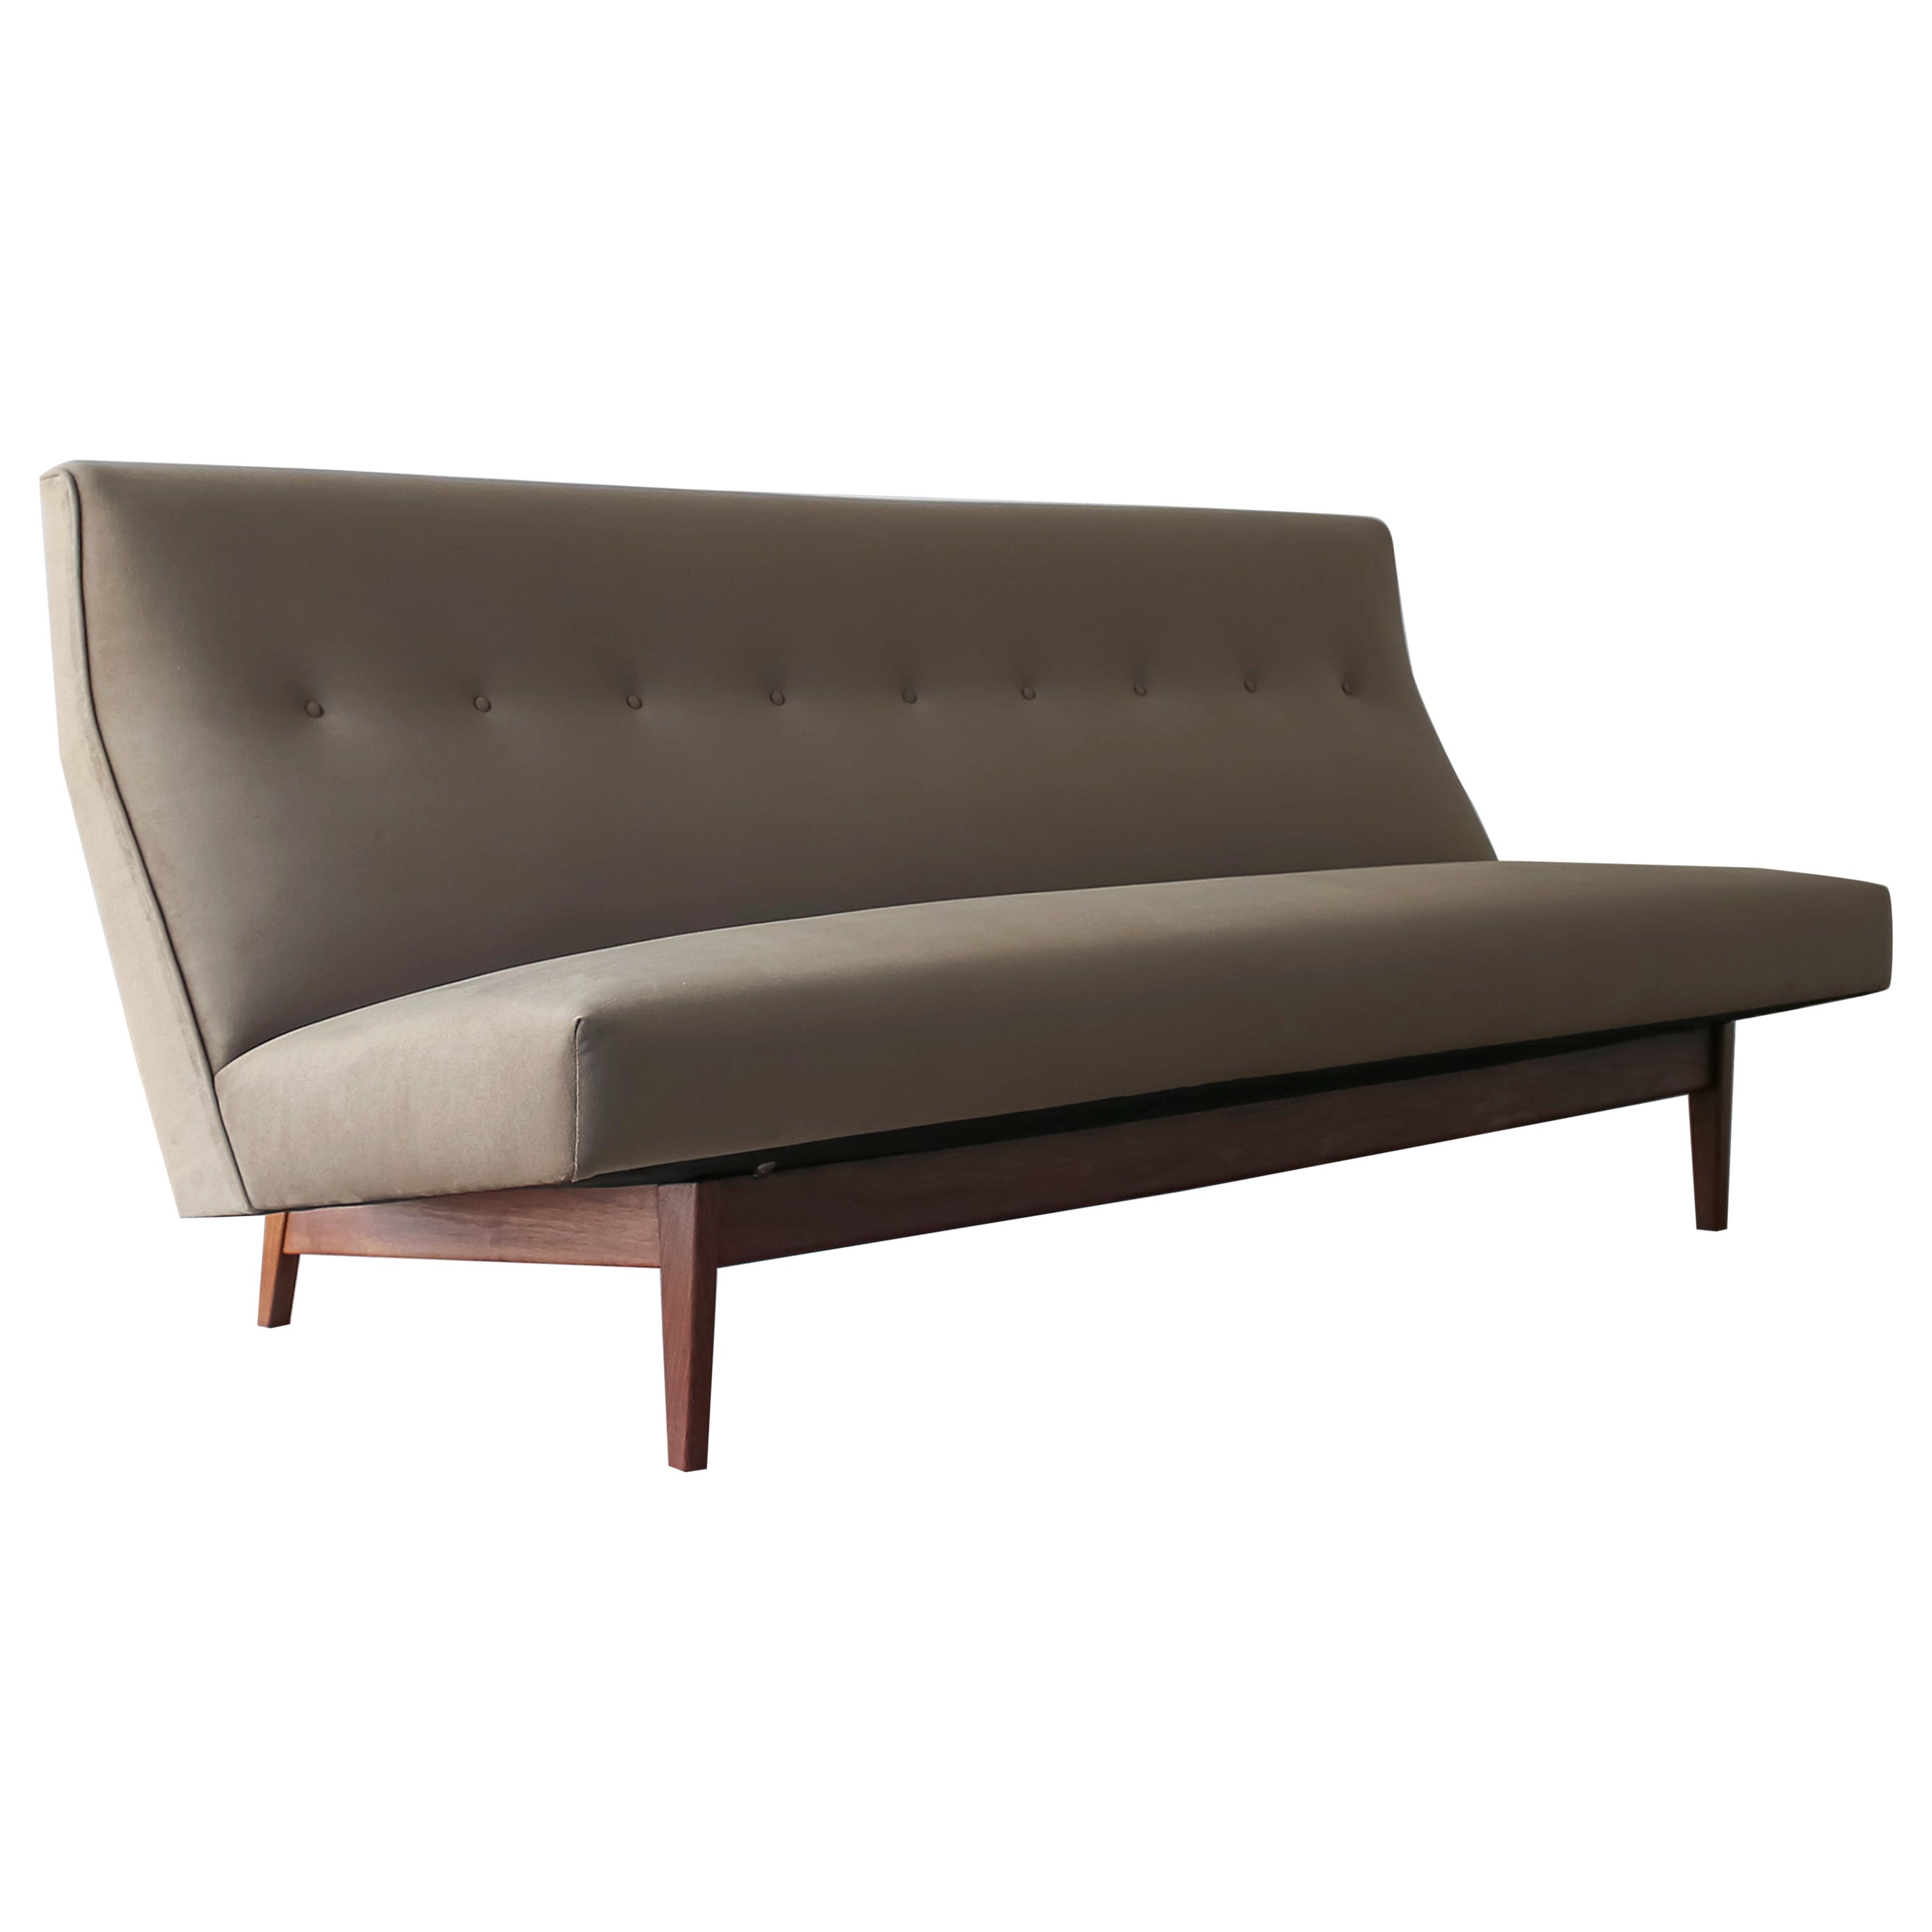 Sofa Modèle 250 de Jens Risom - 2 disponibles